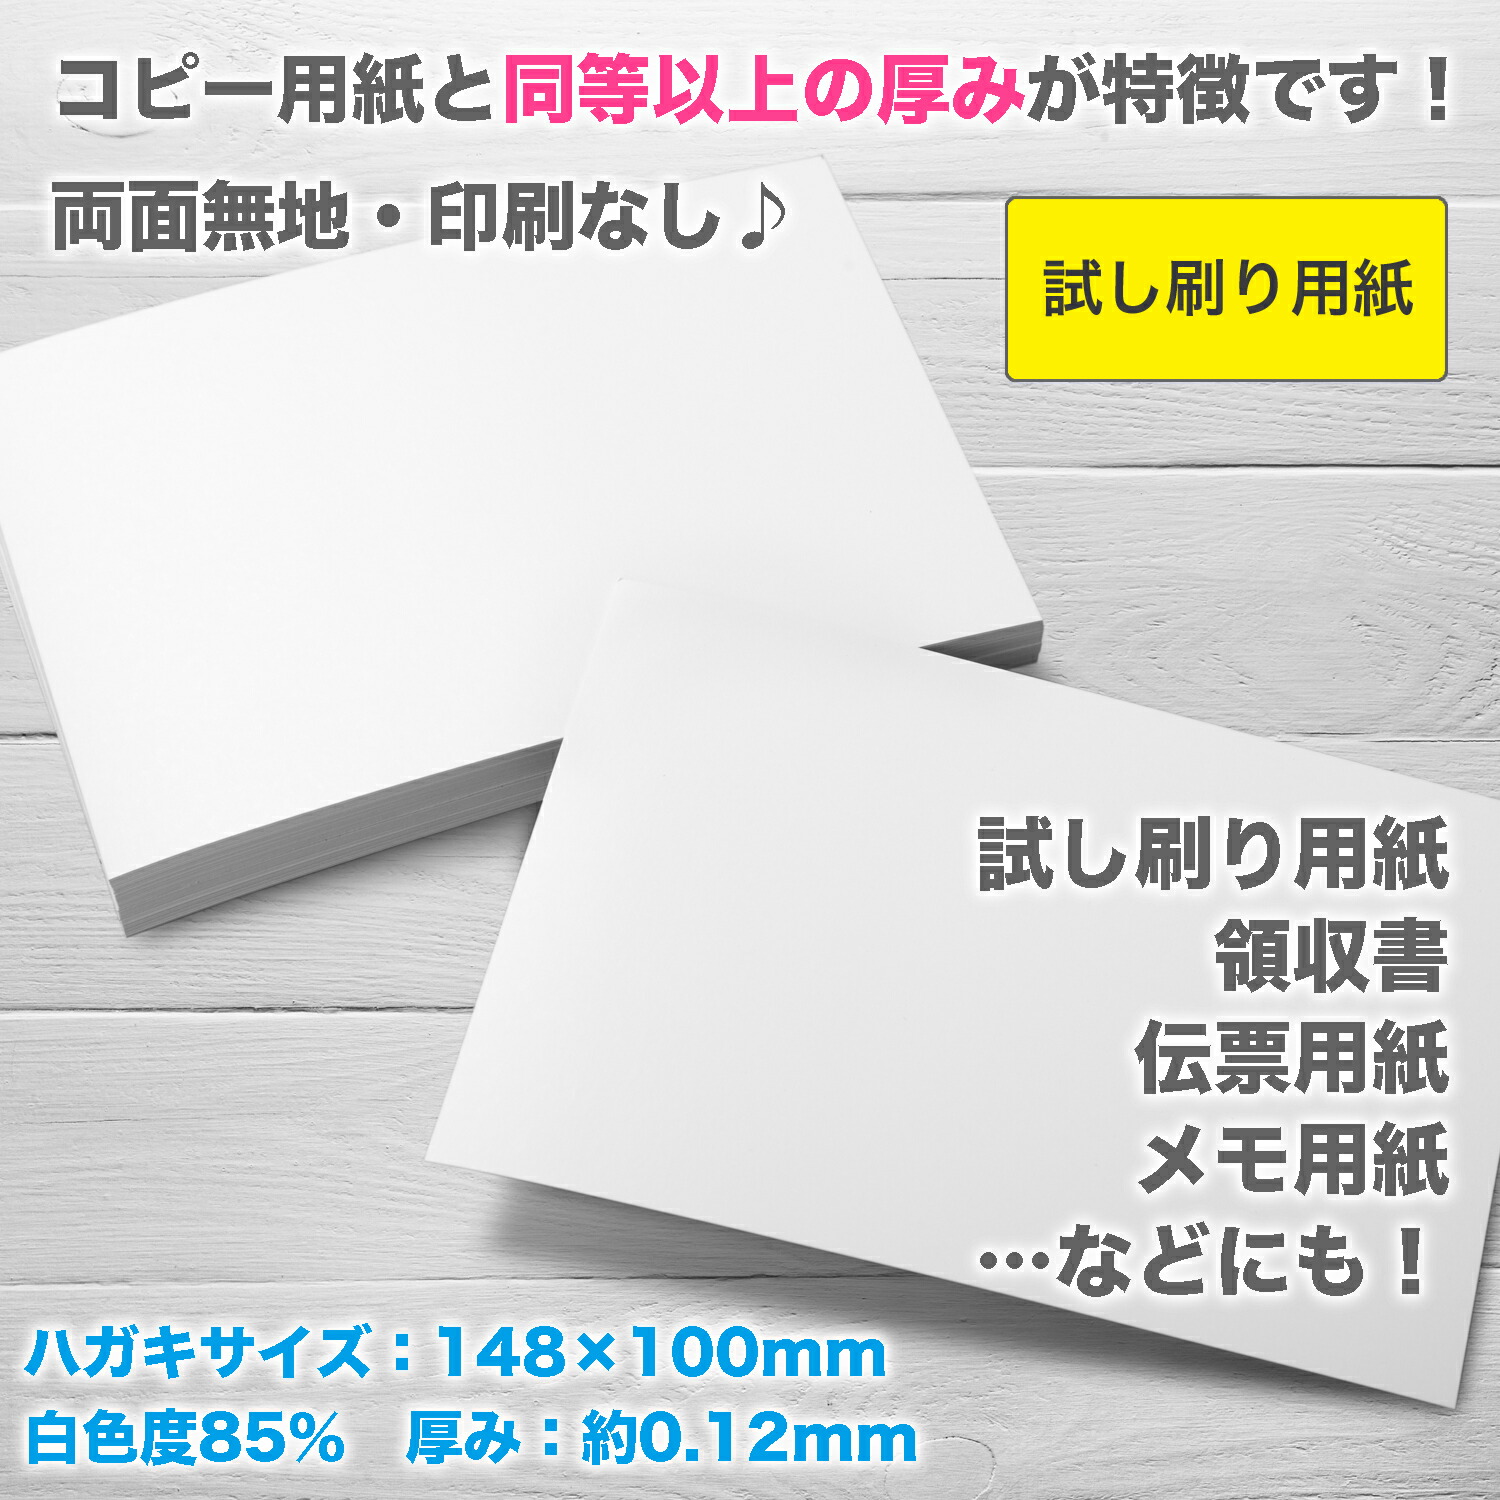 *.. san план [.... бумага ] двусторонний одноцветный открытка размер бумага 148×100mm 200 листов / сделано в Японии толщина бумага прекрасное качество бумага 90kg белый цвет раз 85% бумага толщина примерно 0.1mm POST-200-J90( Fukuoka наличие ) бобы .